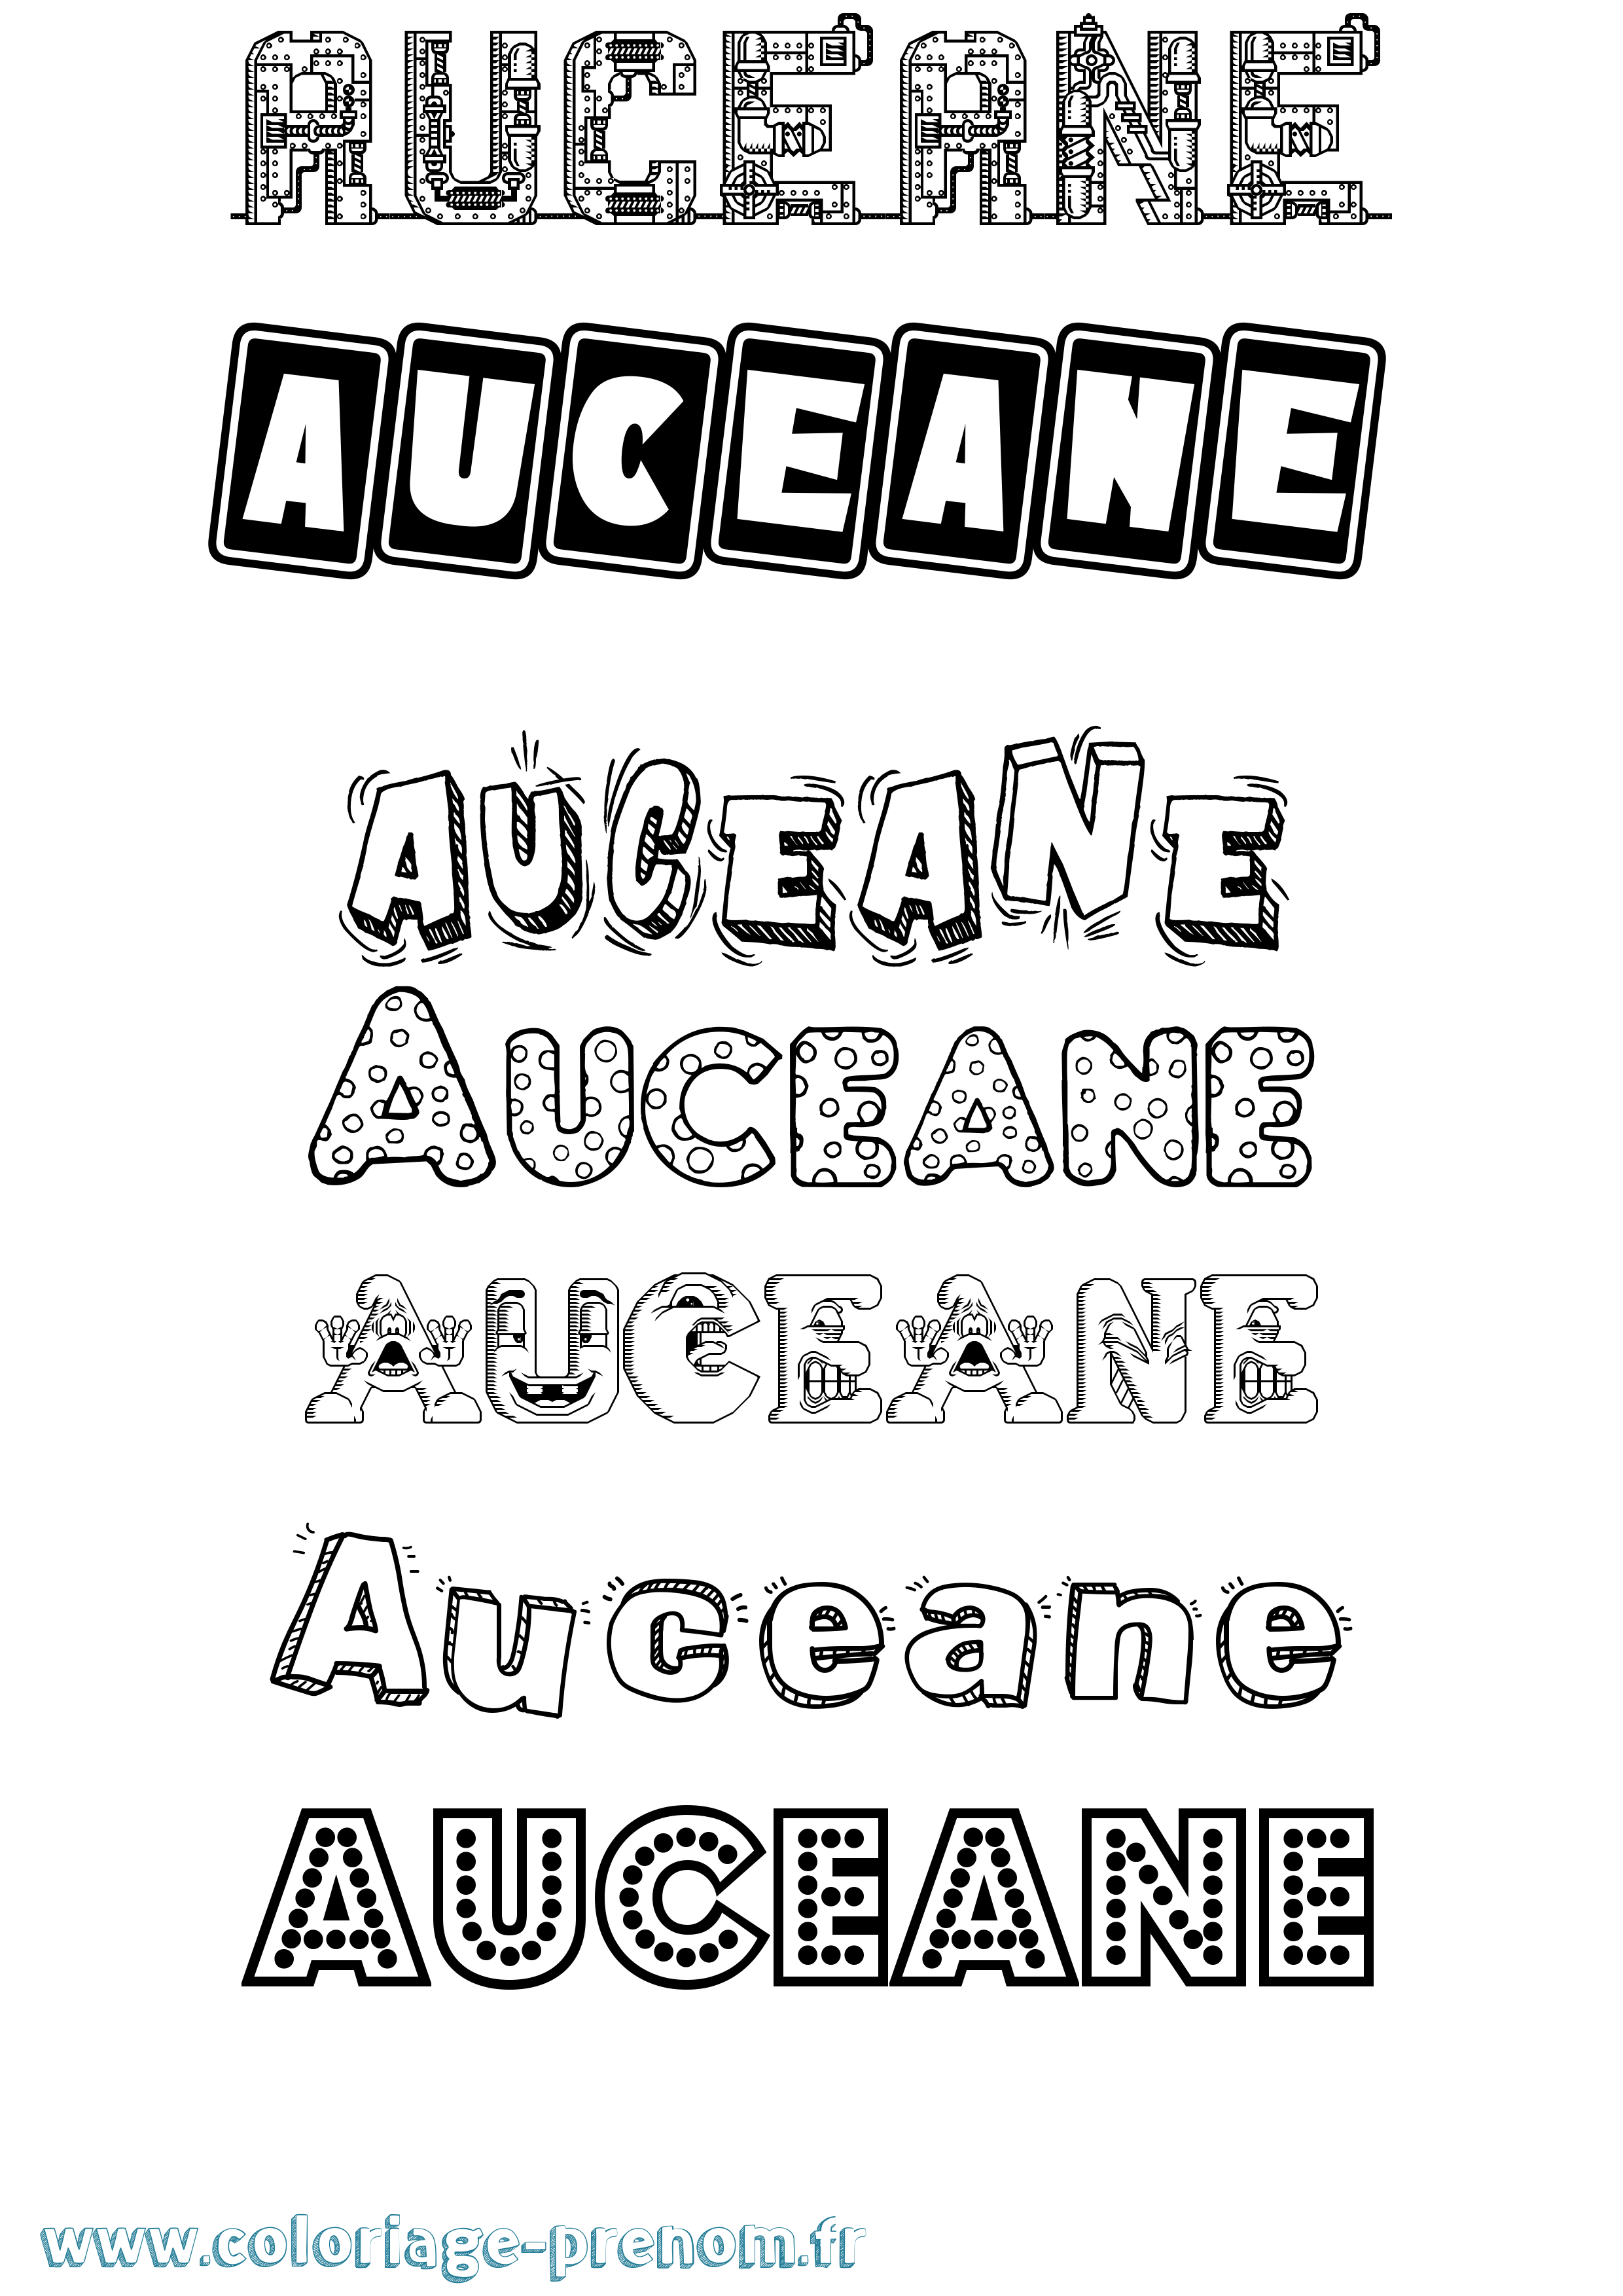 Coloriage prénom Auceane Fun